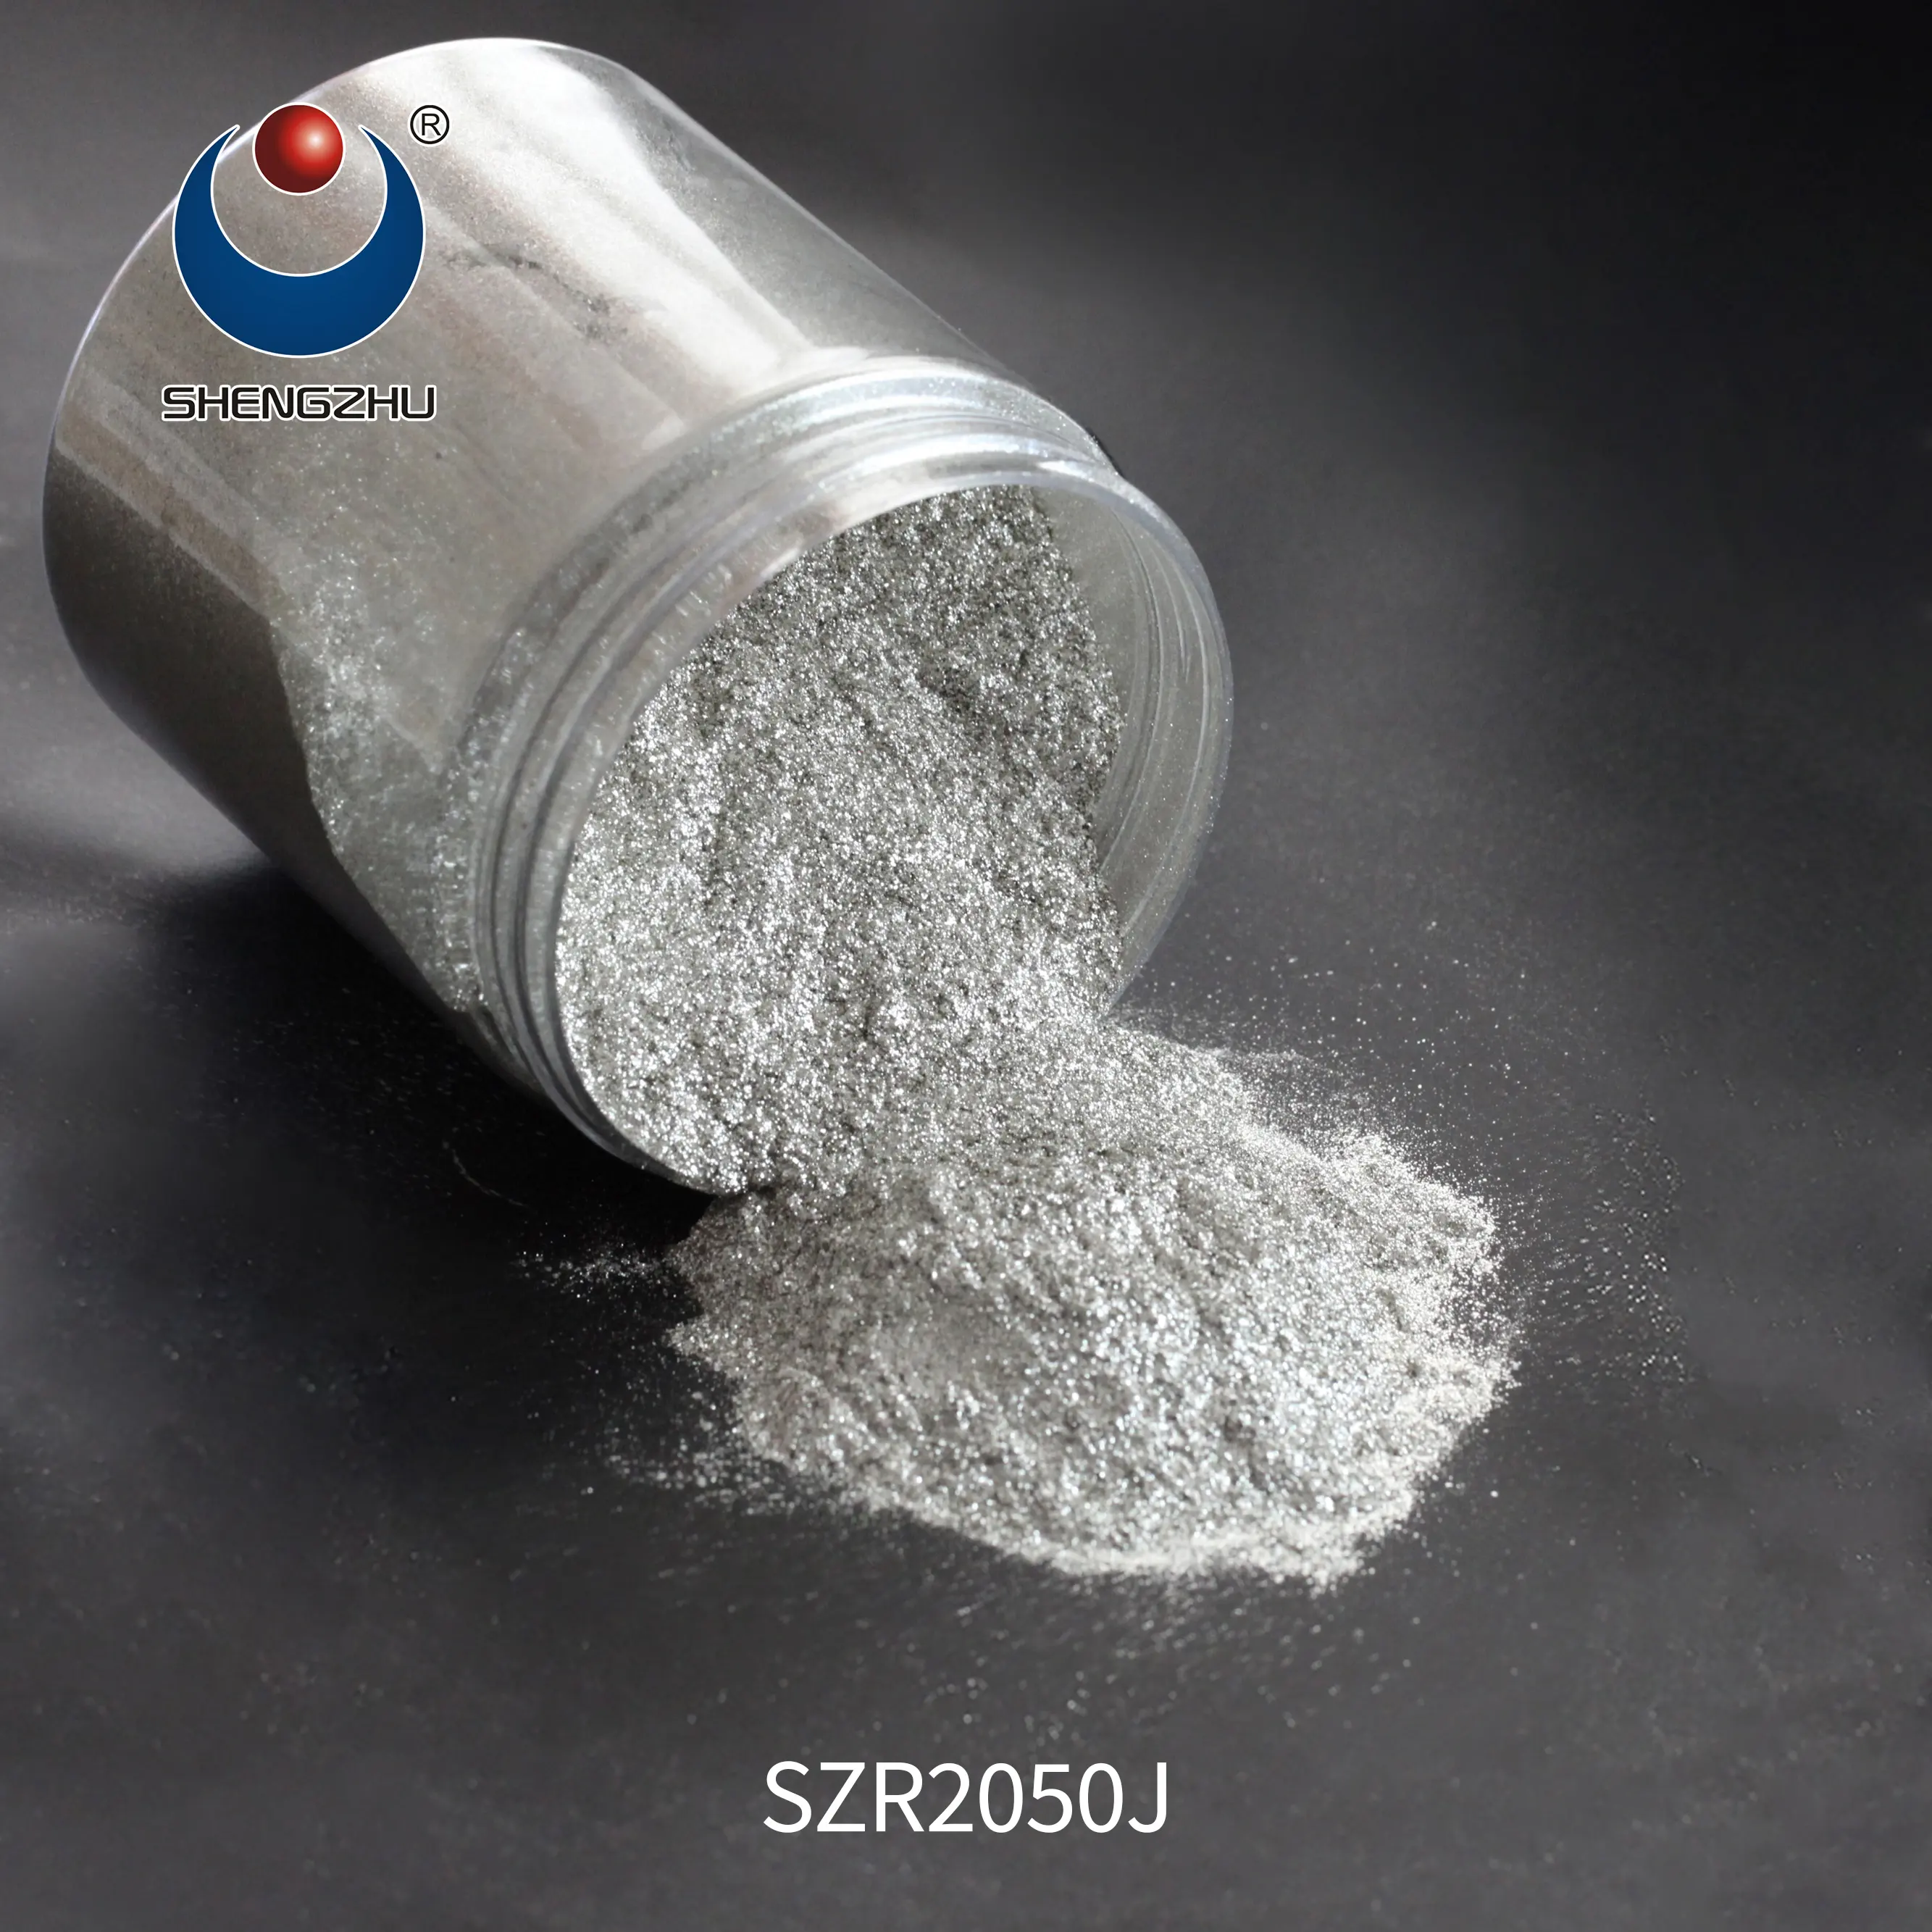 ชิมเมอร์เพชรเงินบริสุทธิ์เม็ดสีSZR2040B Borosilicateแก้วผง